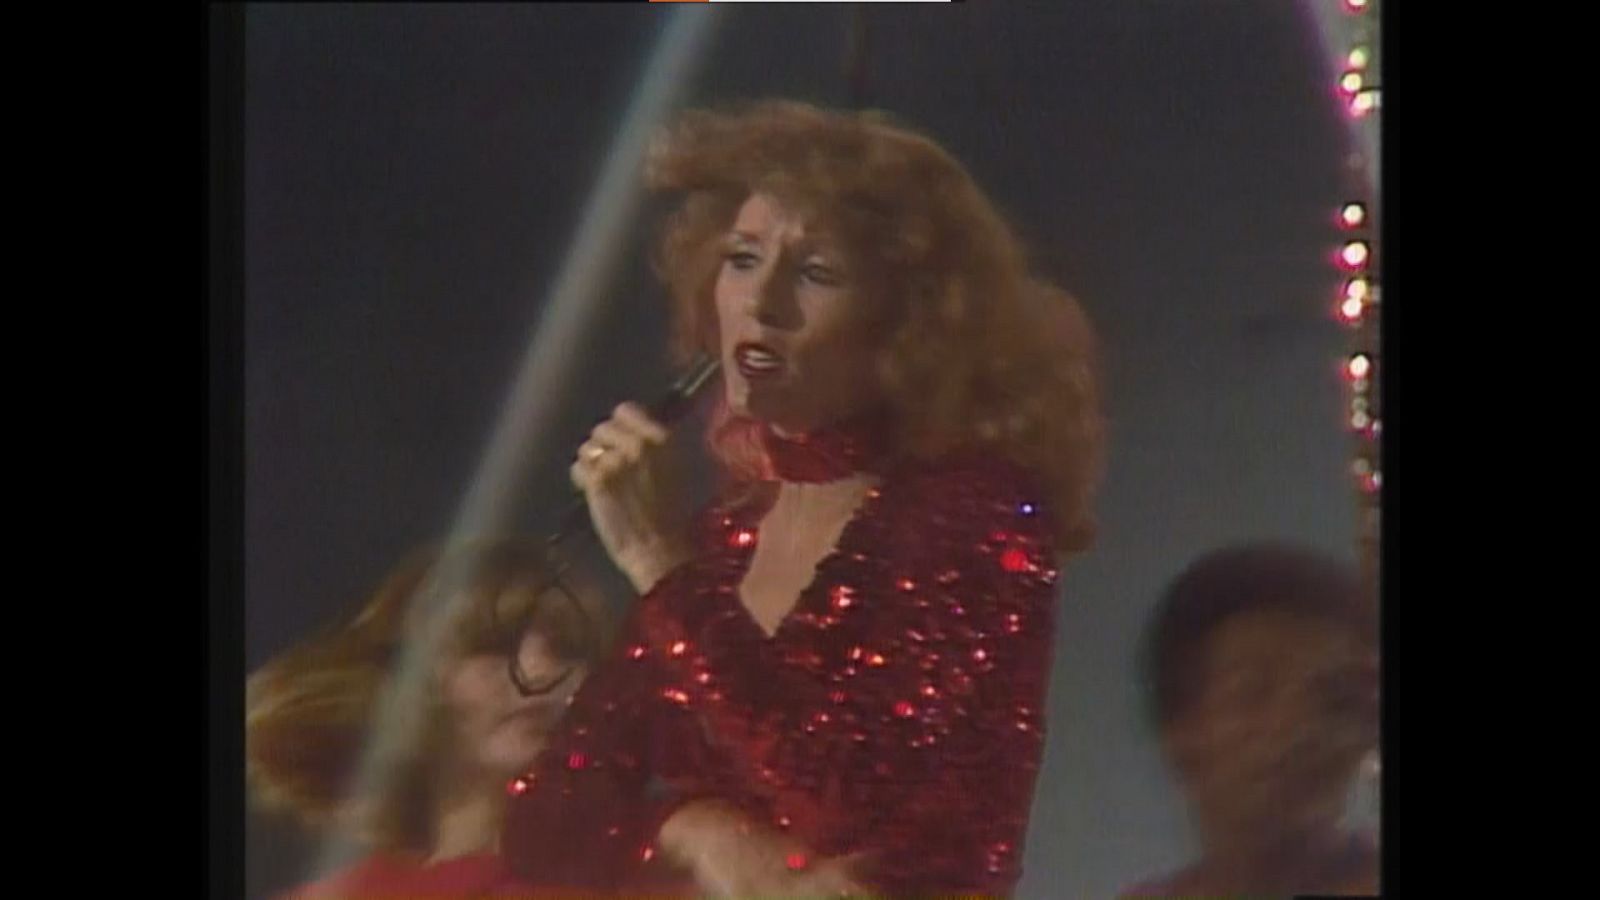 Aplauso - Susana Estrada canta "Ya me voy de tu vida" (1978)